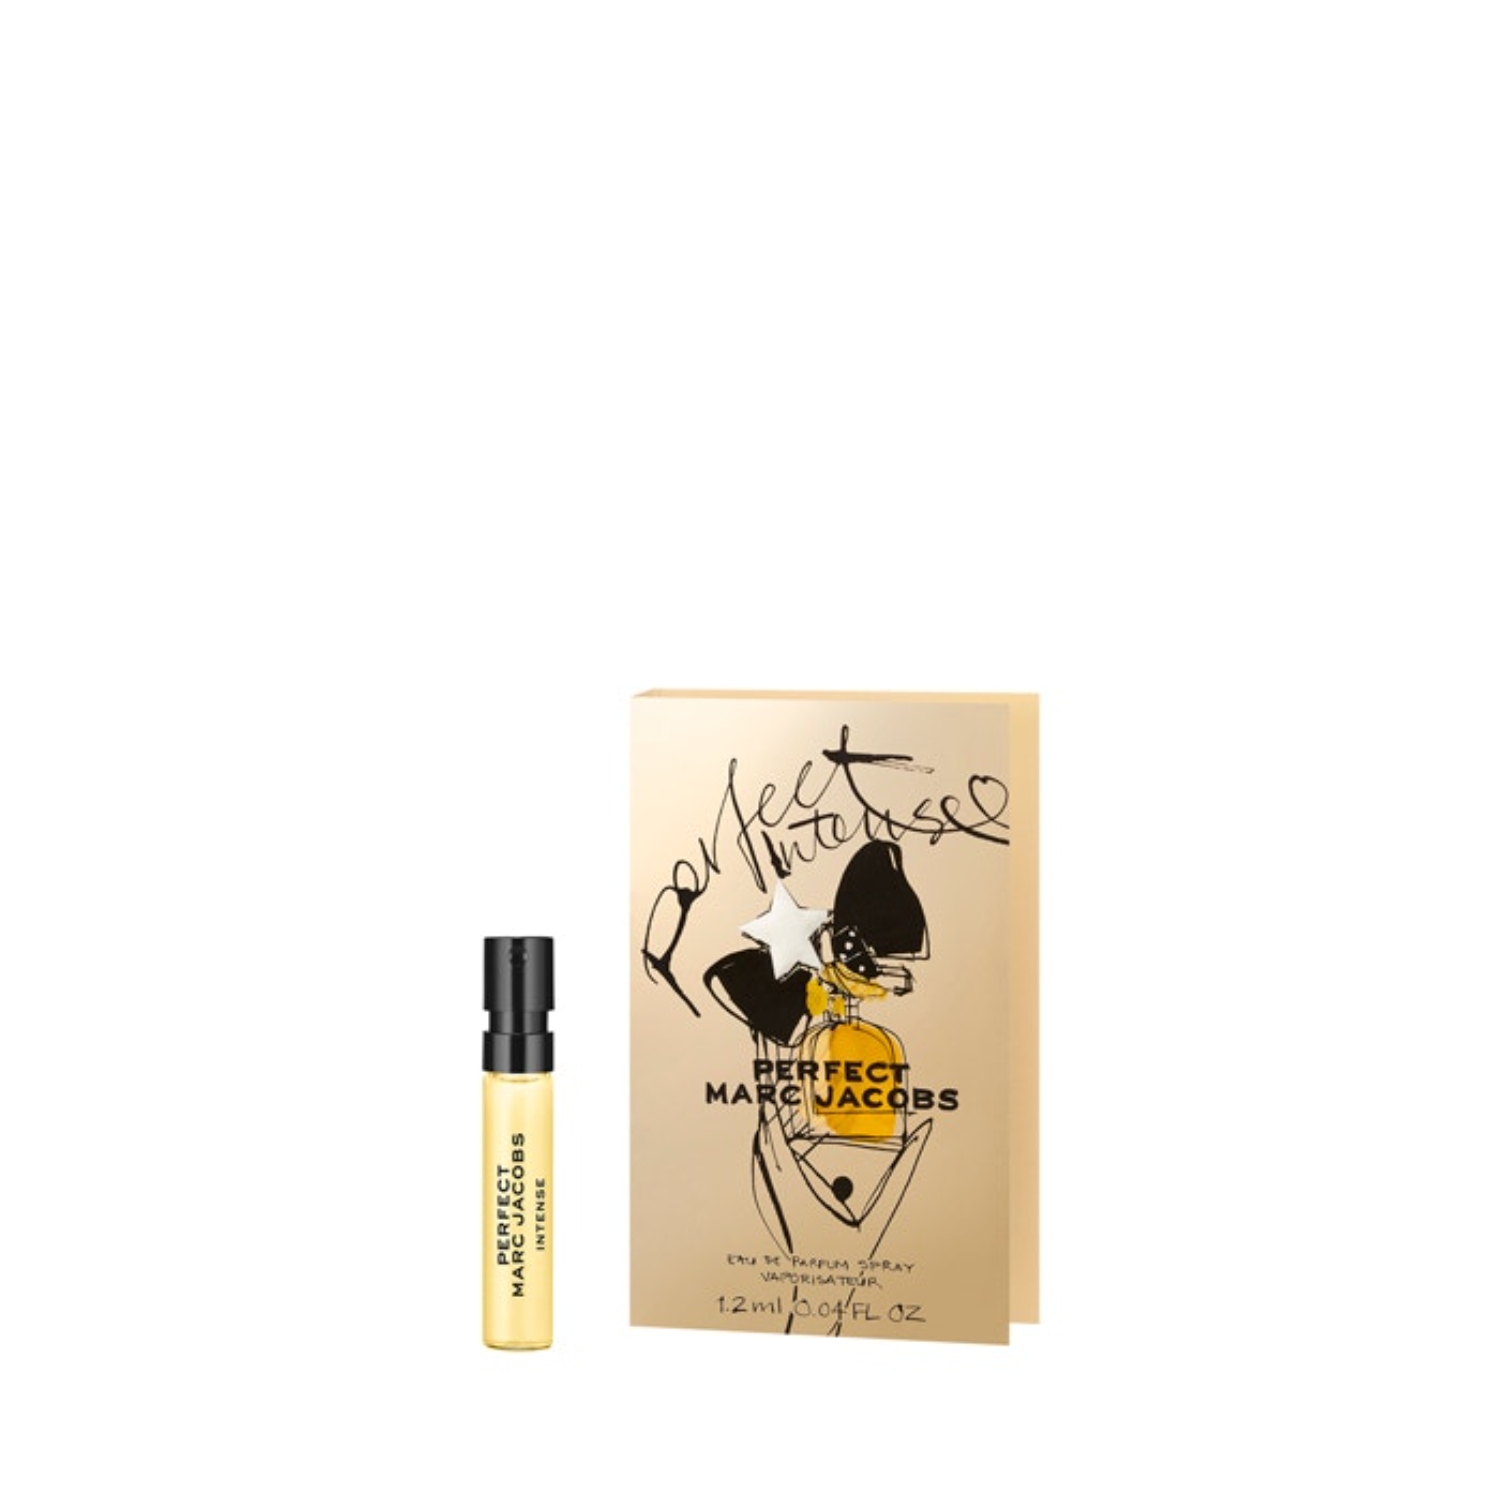 Marc Jacobs Perfect Intense Eau de Parfum Spray